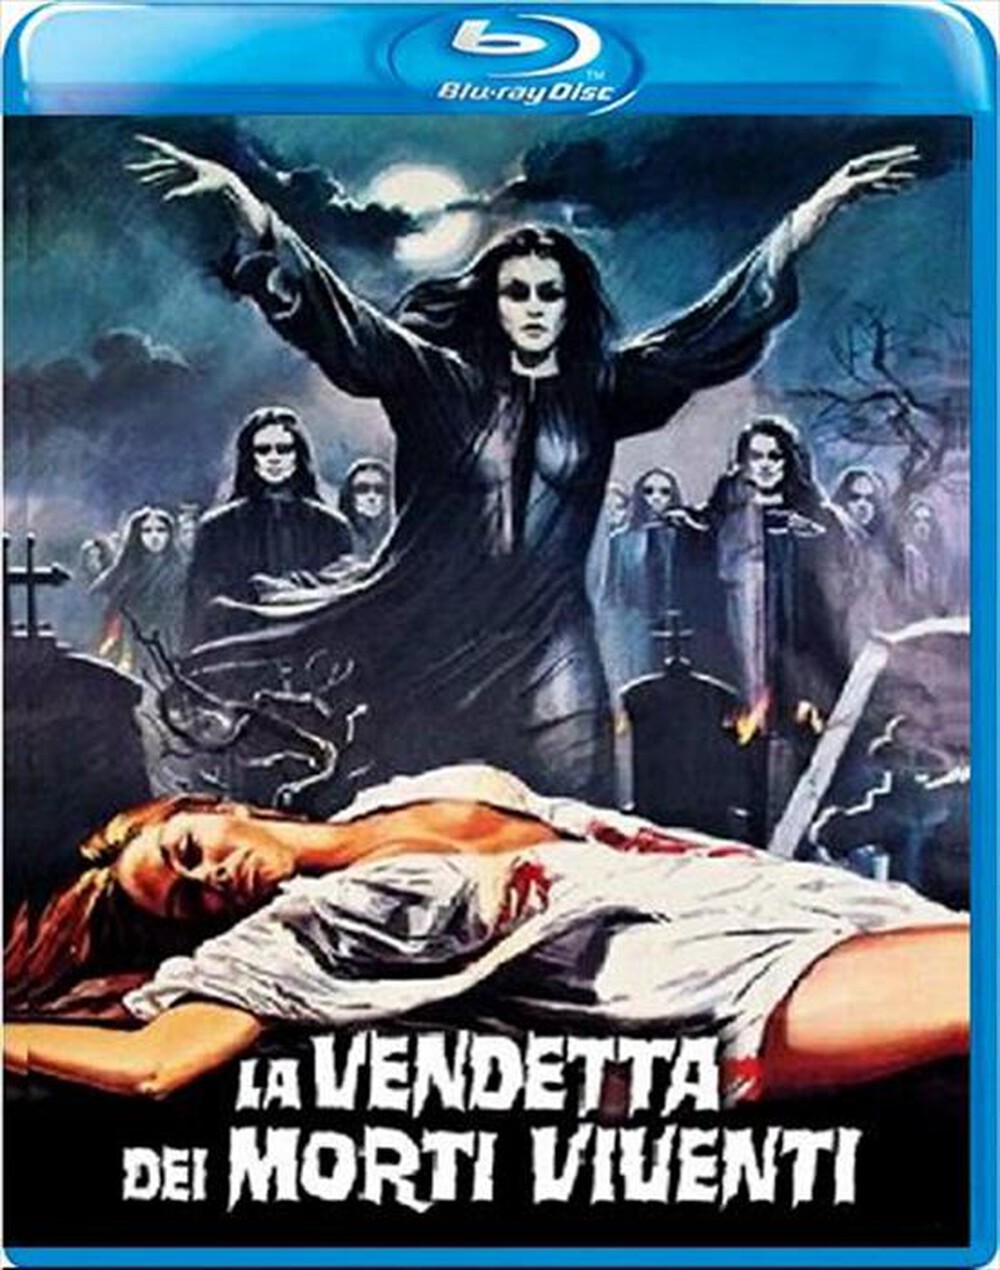 "QUADRIFOGLIO - Vendetta Dei Morti Viventi (La) (1986) - "